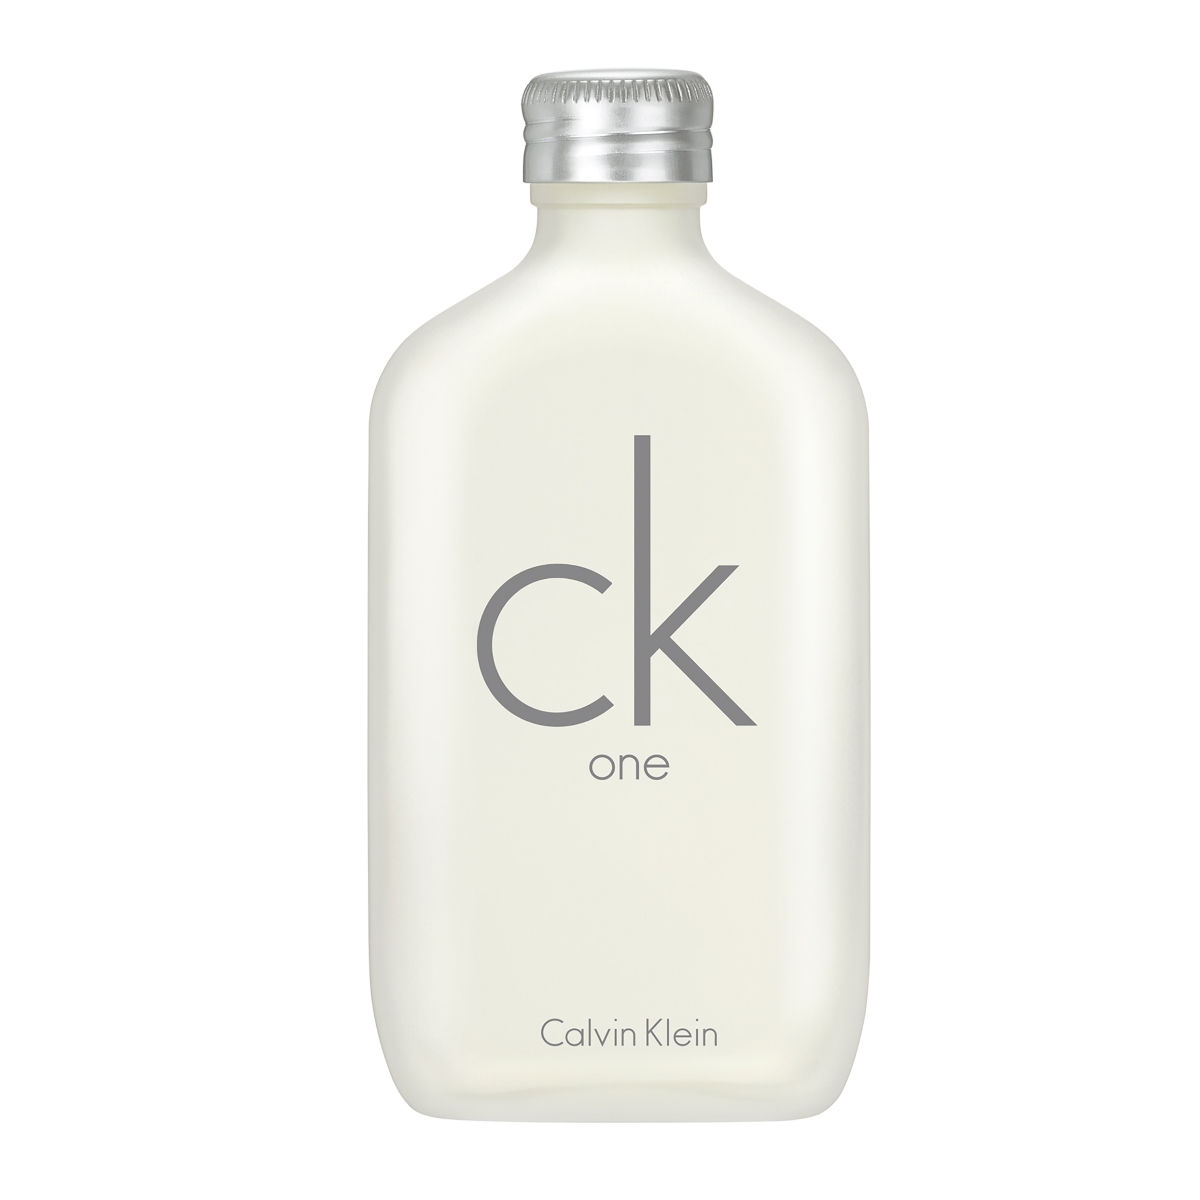 CK One de Calvin Klein.